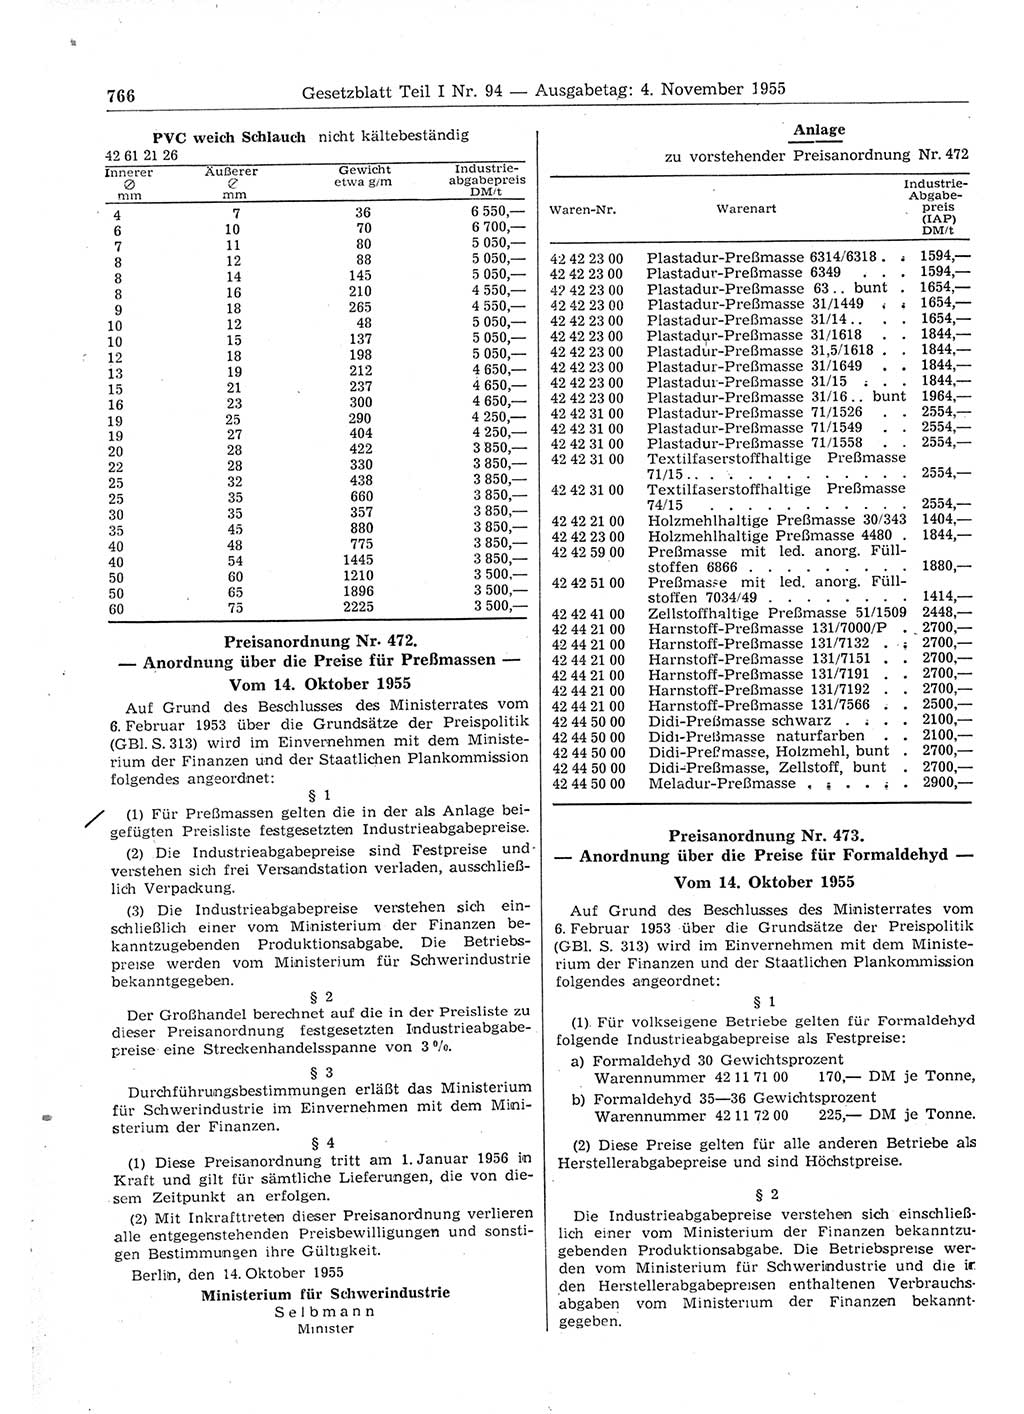 Gesetzblatt (GBl.) der Deutschen Demokratischen Republik (DDR) Teil Ⅰ 1955, Seite 766 (GBl. DDR Ⅰ 1955, S. 766)